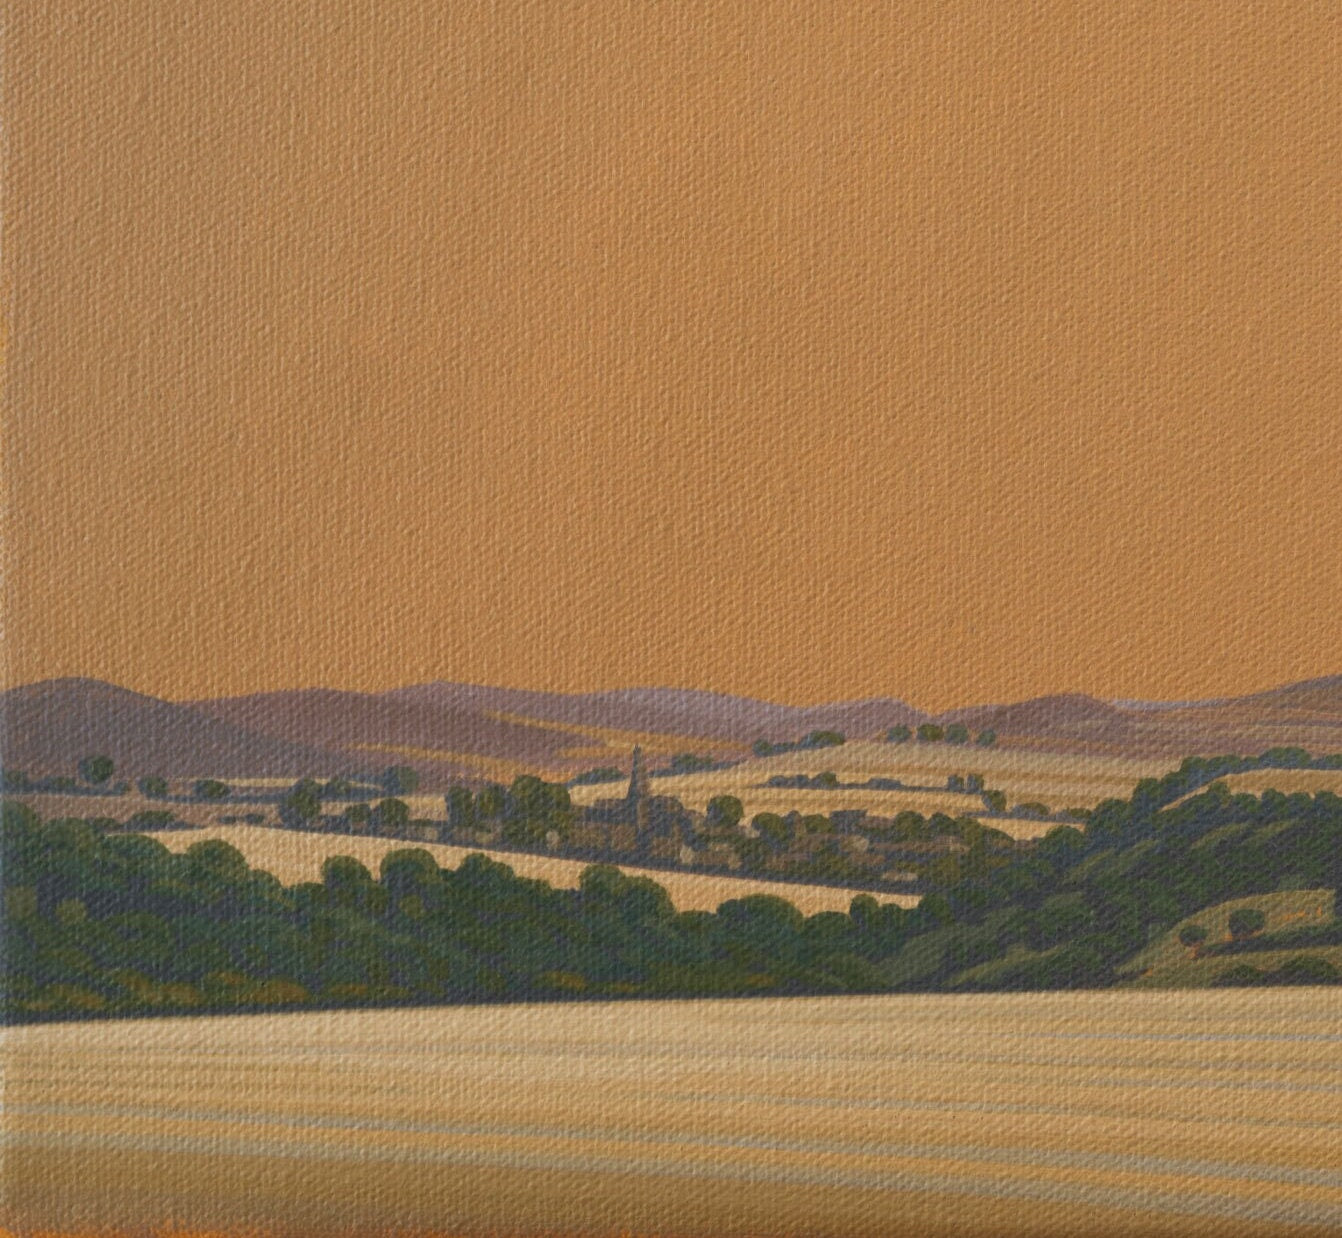 Leinwandbild – Brillanter Kunstdruck – 20x20 cm – uv-beständig – Landschaft mit goldenem Himmel